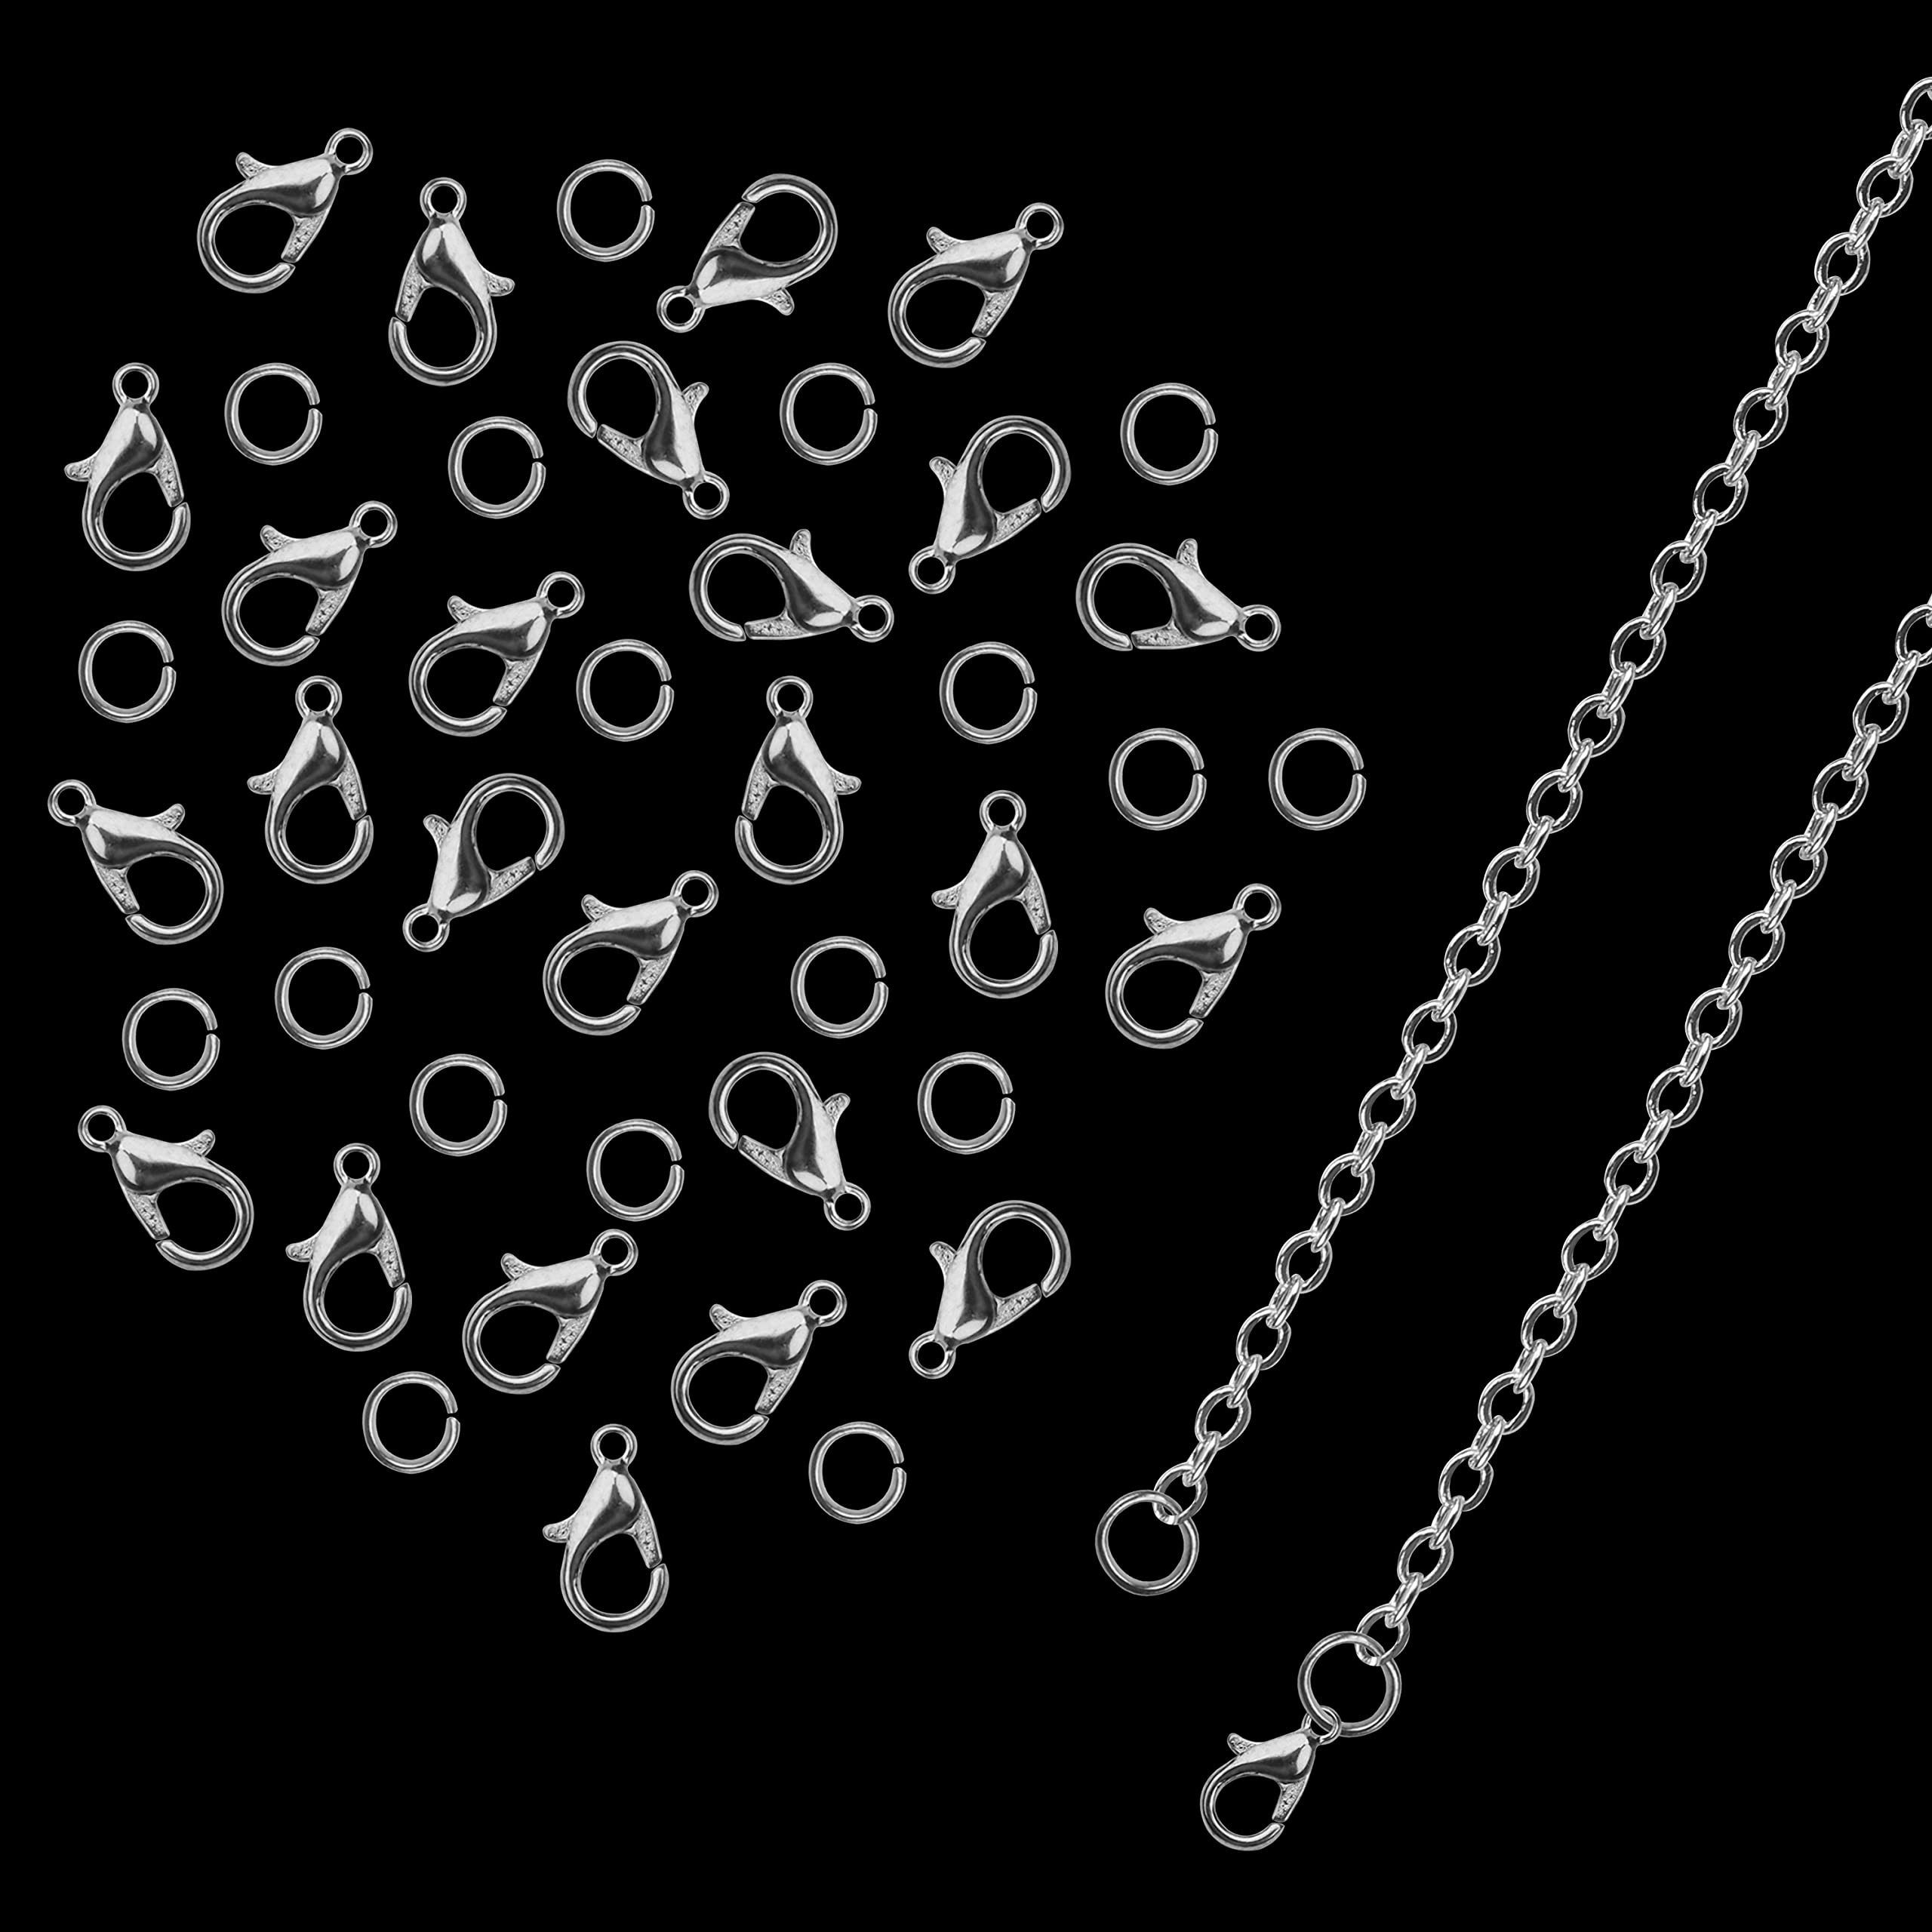 Metall, Rundstahlkette für Silver for Chain Necklaces Kurtzy DIY 33ft Silberkette DIY-Halsketten, 33ft